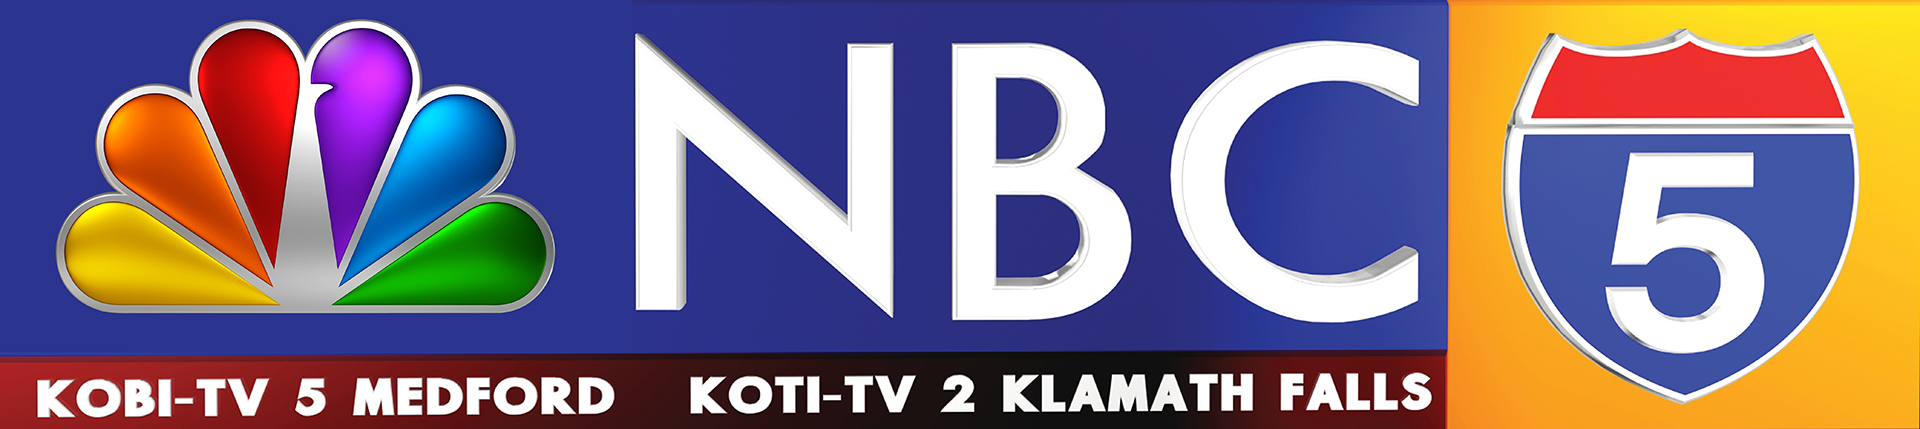 KOBI TV 5